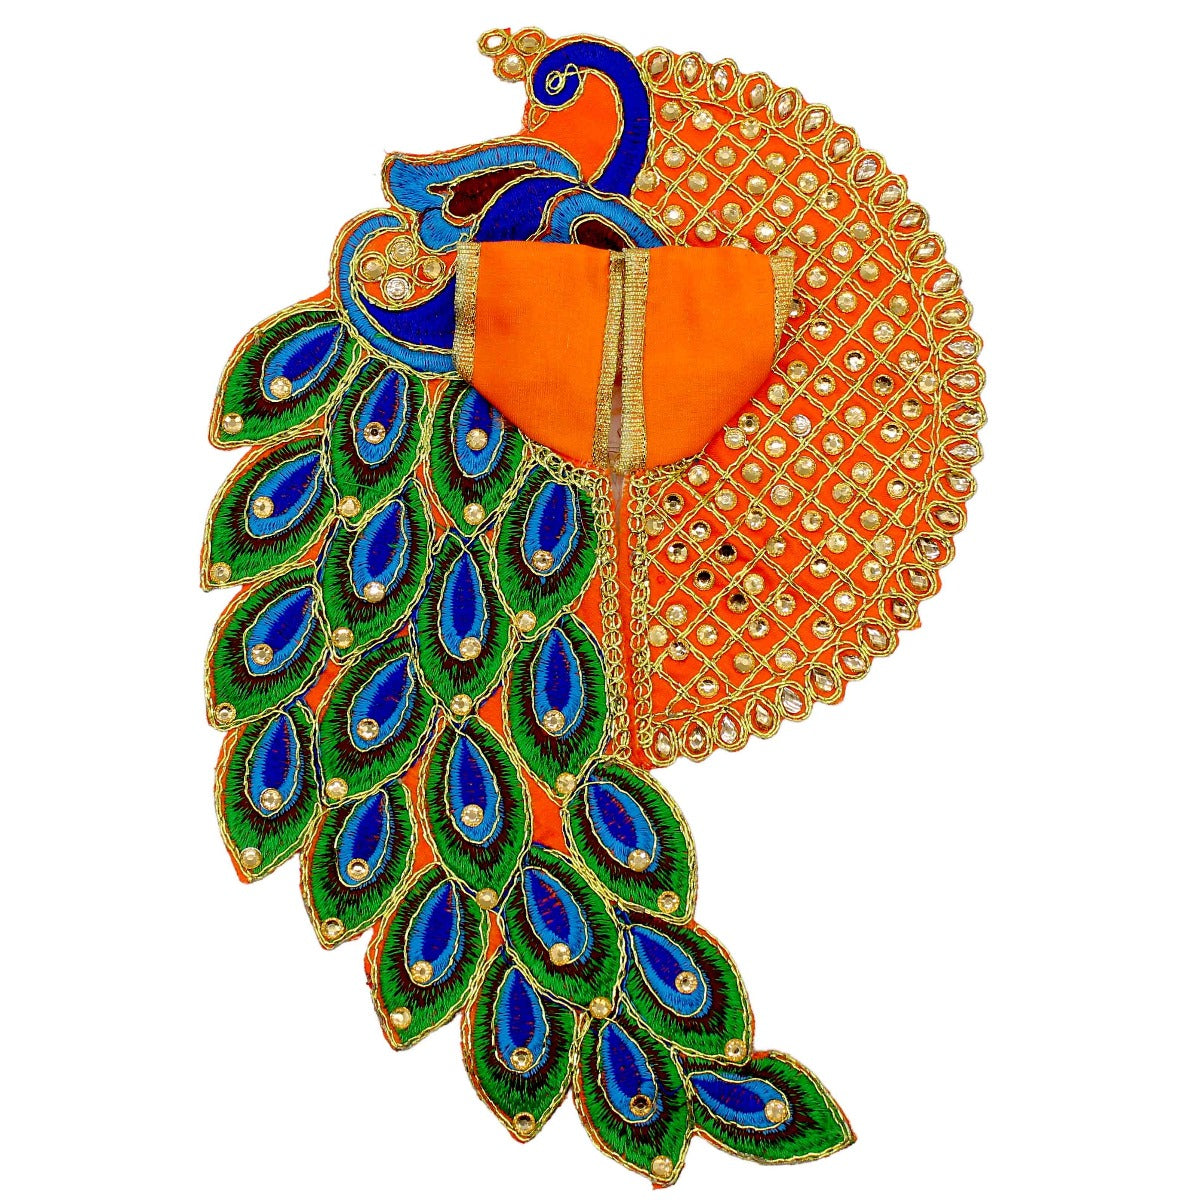 Peacock Design Decorated Orange Dress For Laddu Gopal